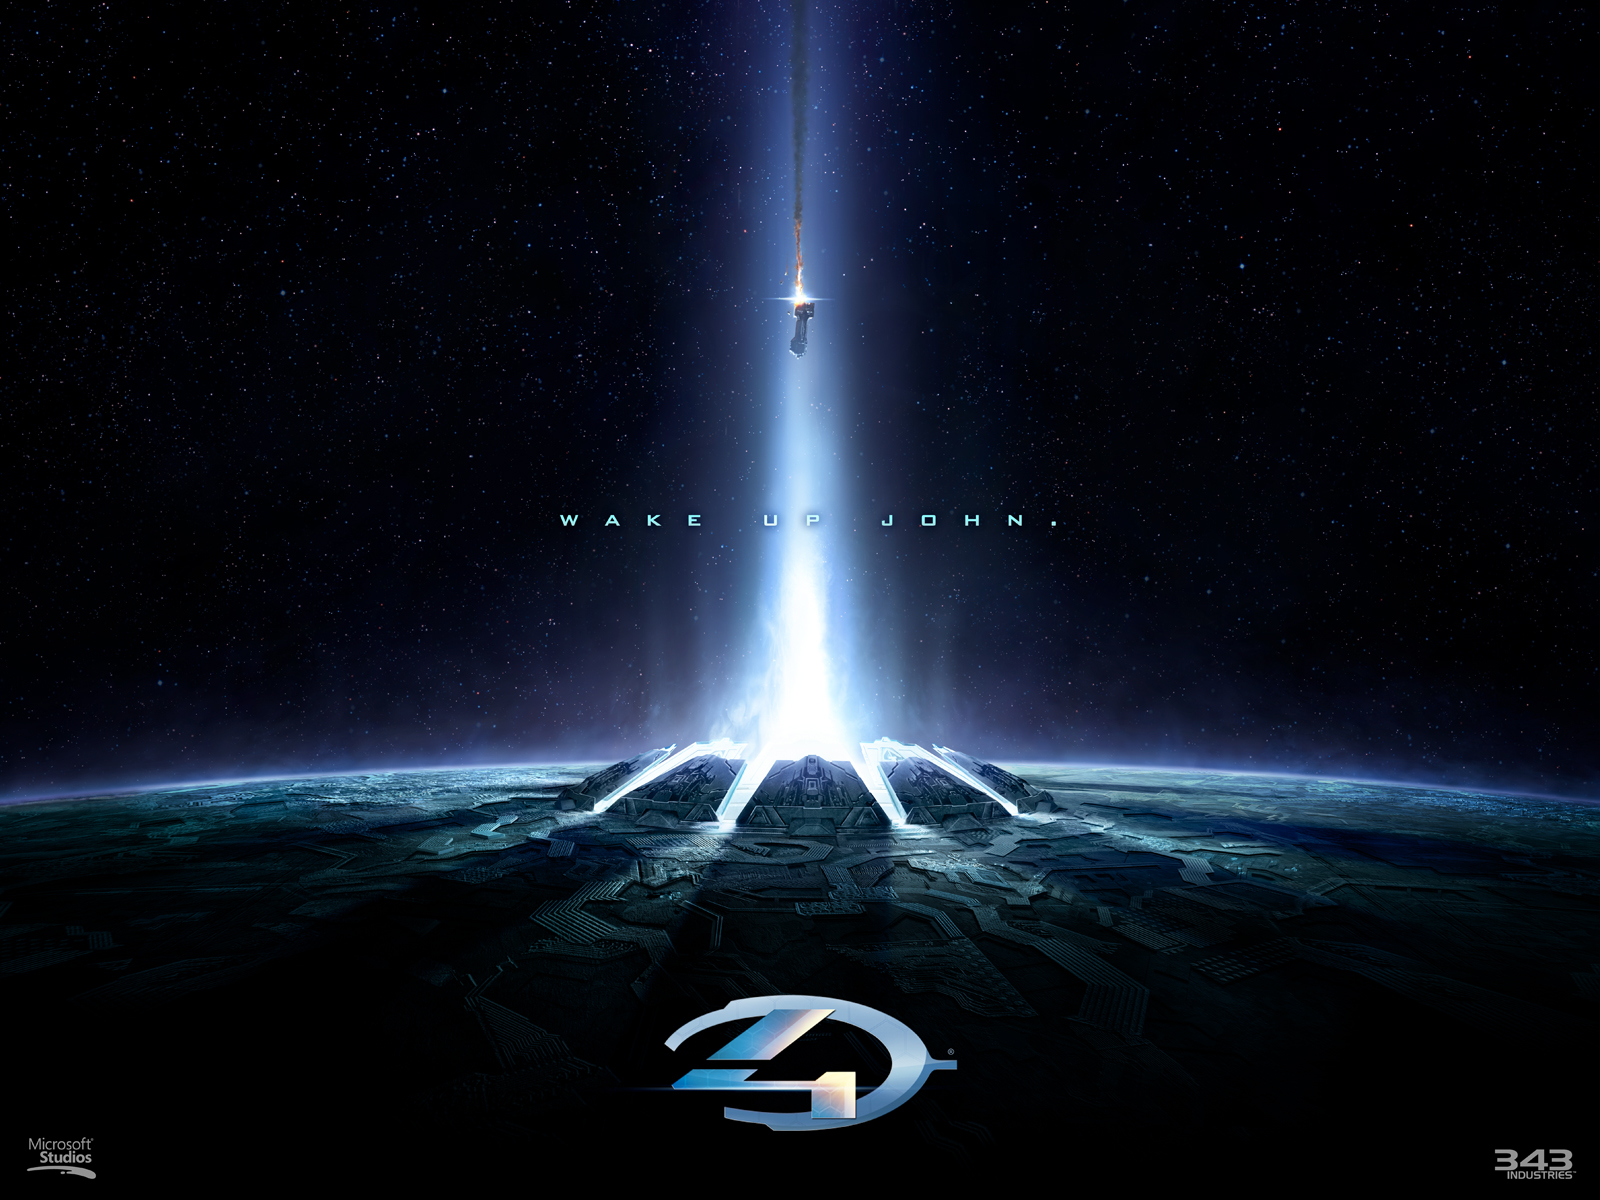 Halo 4 informnacion real - Taringa!